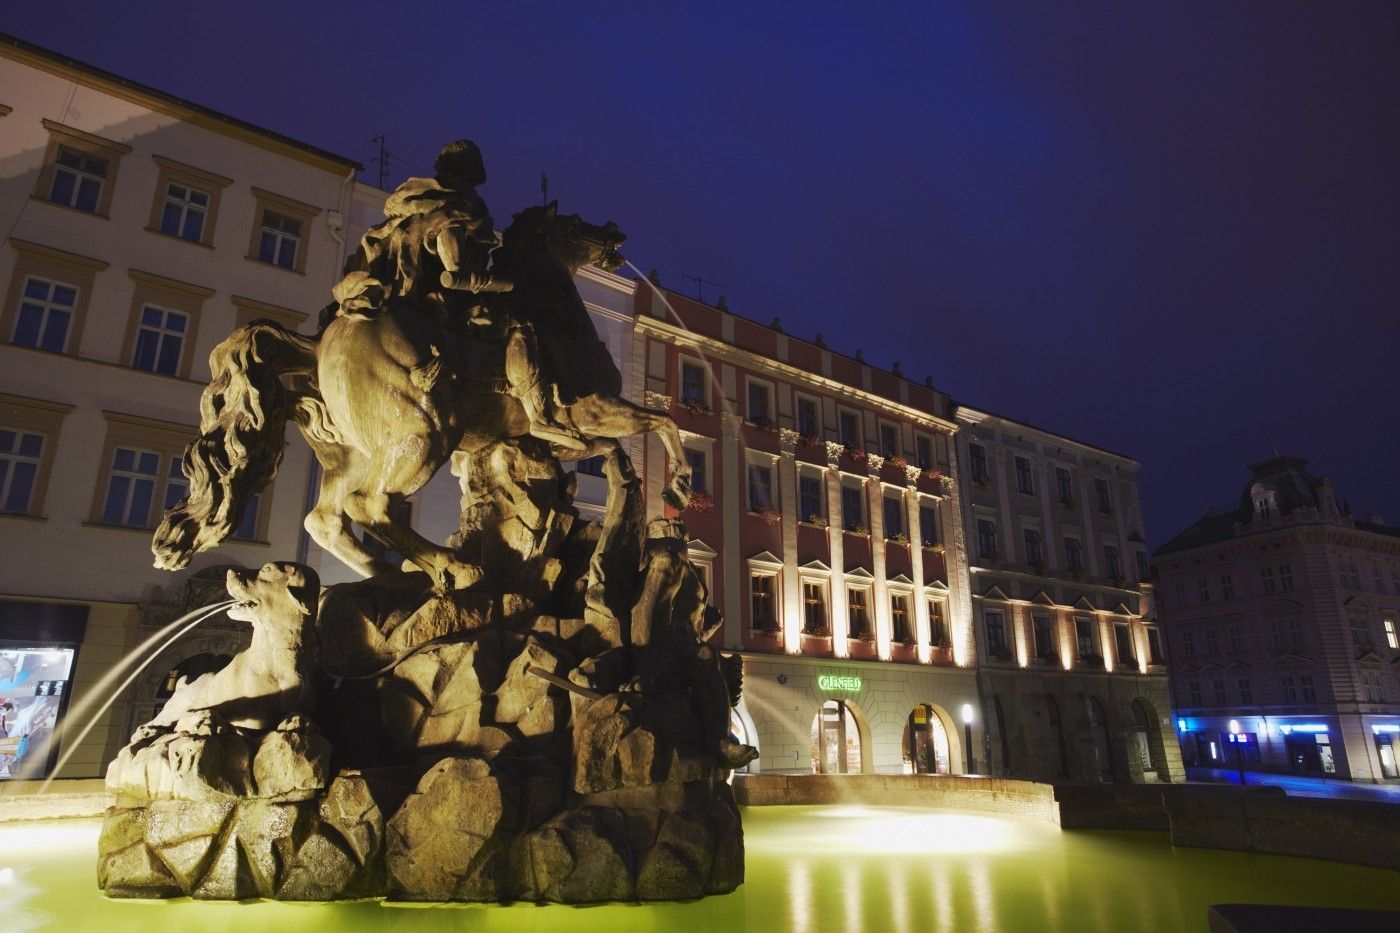 Olomouc - Horní náměstí